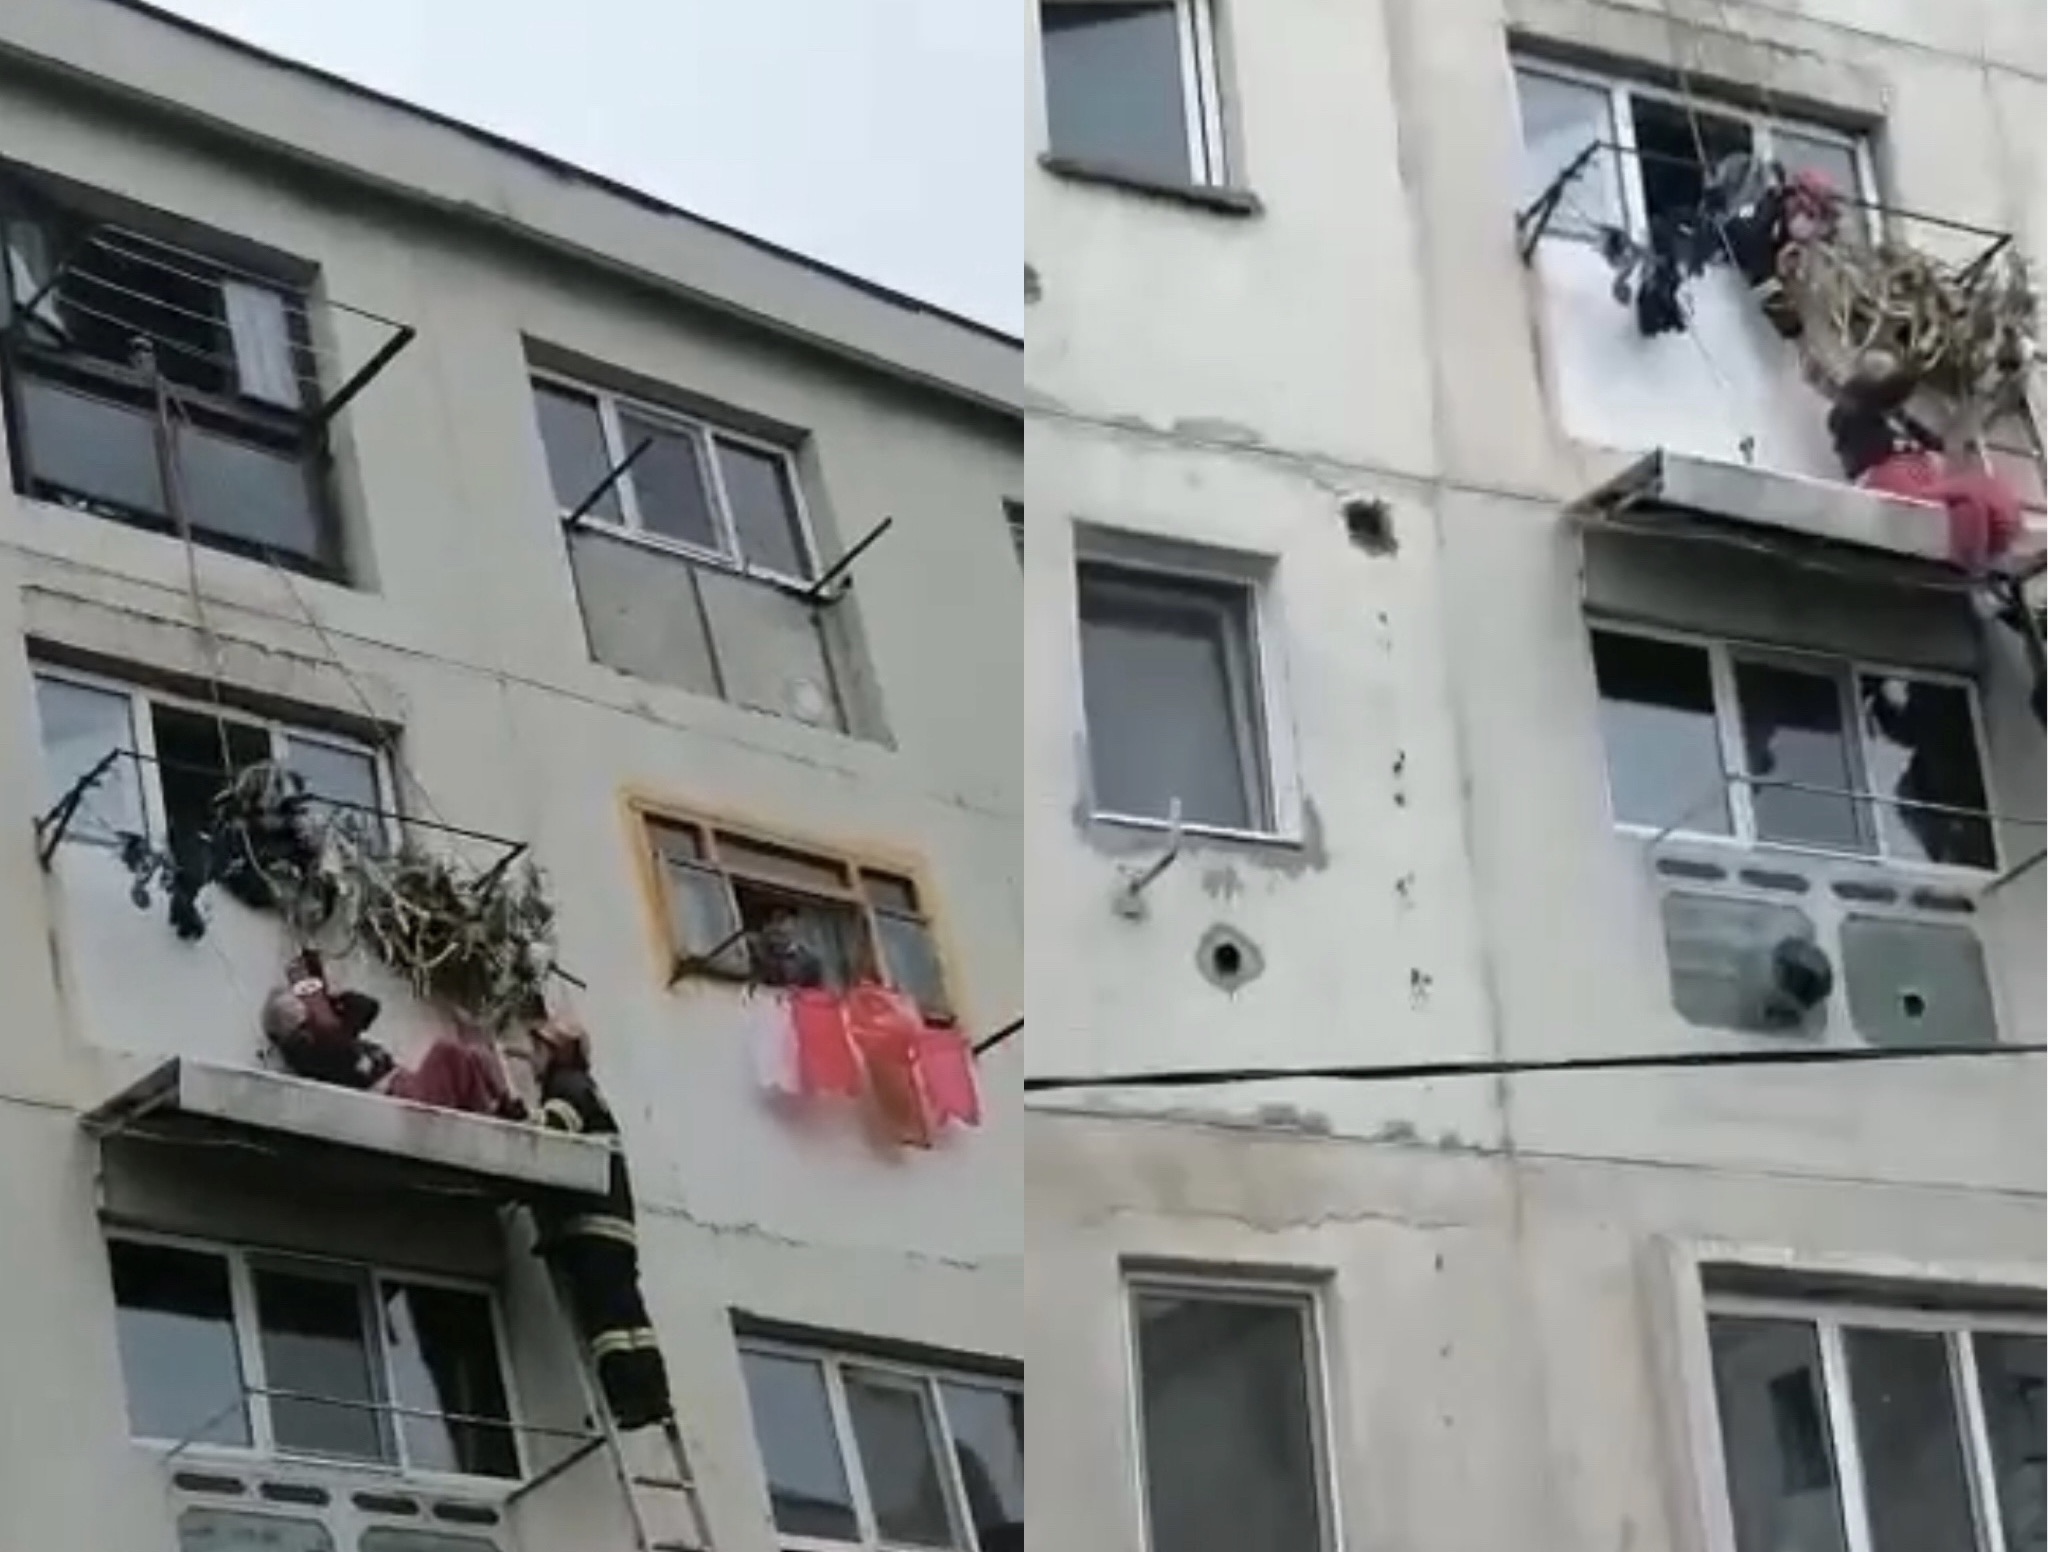 Bărbat căzut de la etajul 4, salvat în ultima clipă. A rămas agățat pe copertina unui apartament VIDEO